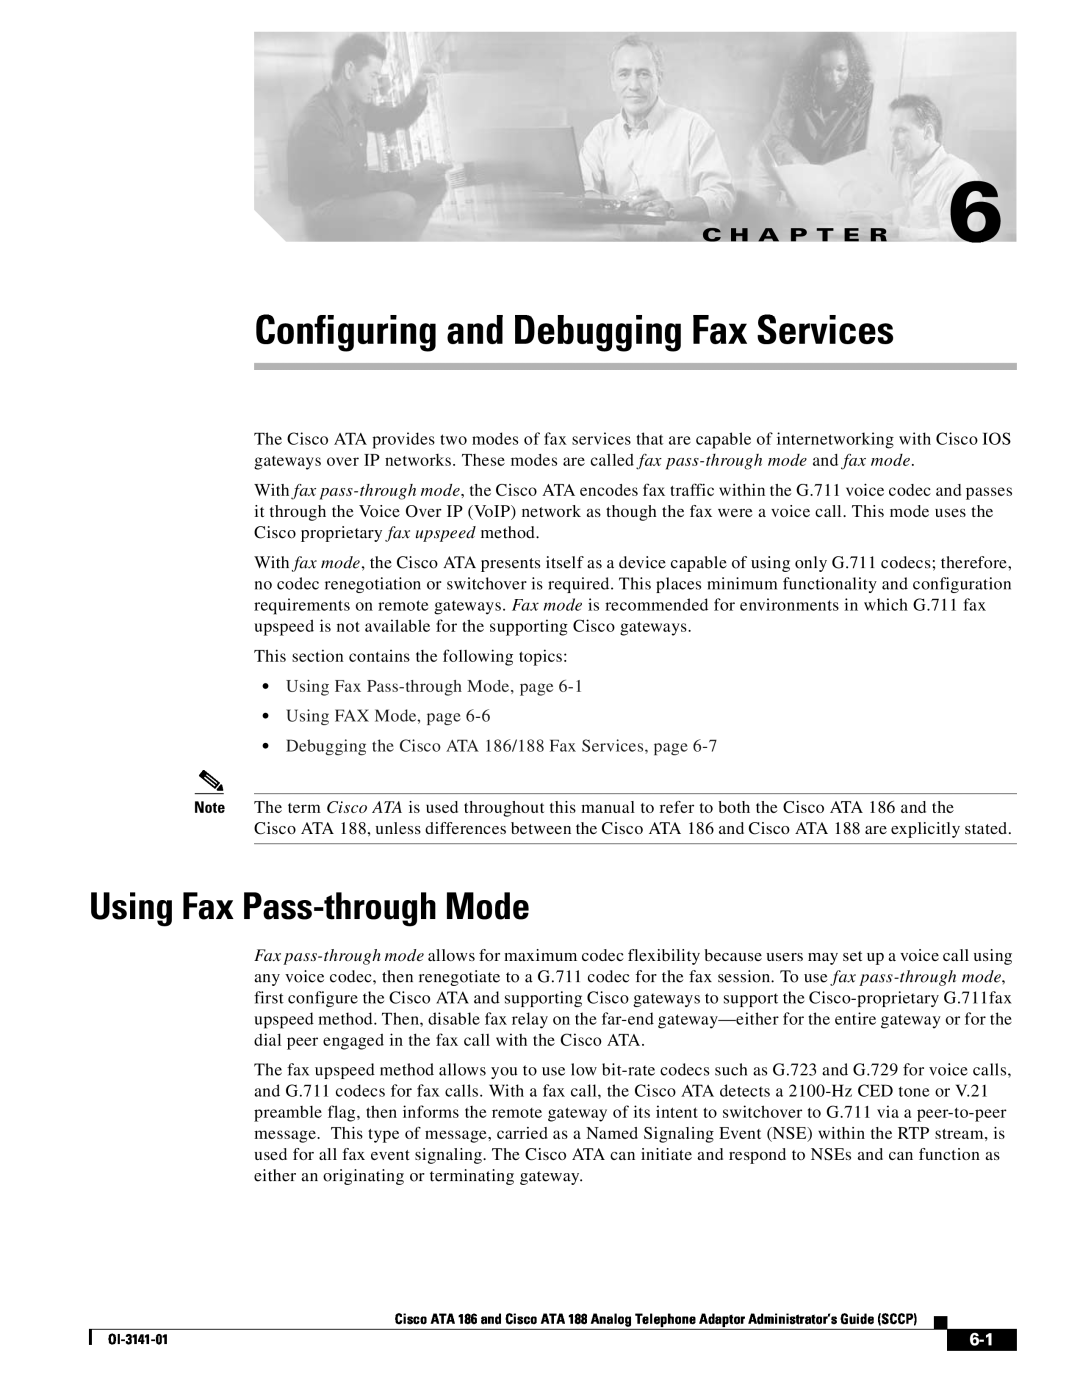 Cisco Systems ATA 188, ATA 186 manual Configuring and Debugging Fax Services, Using Fax Pass-through Mode, C H A P T E R 